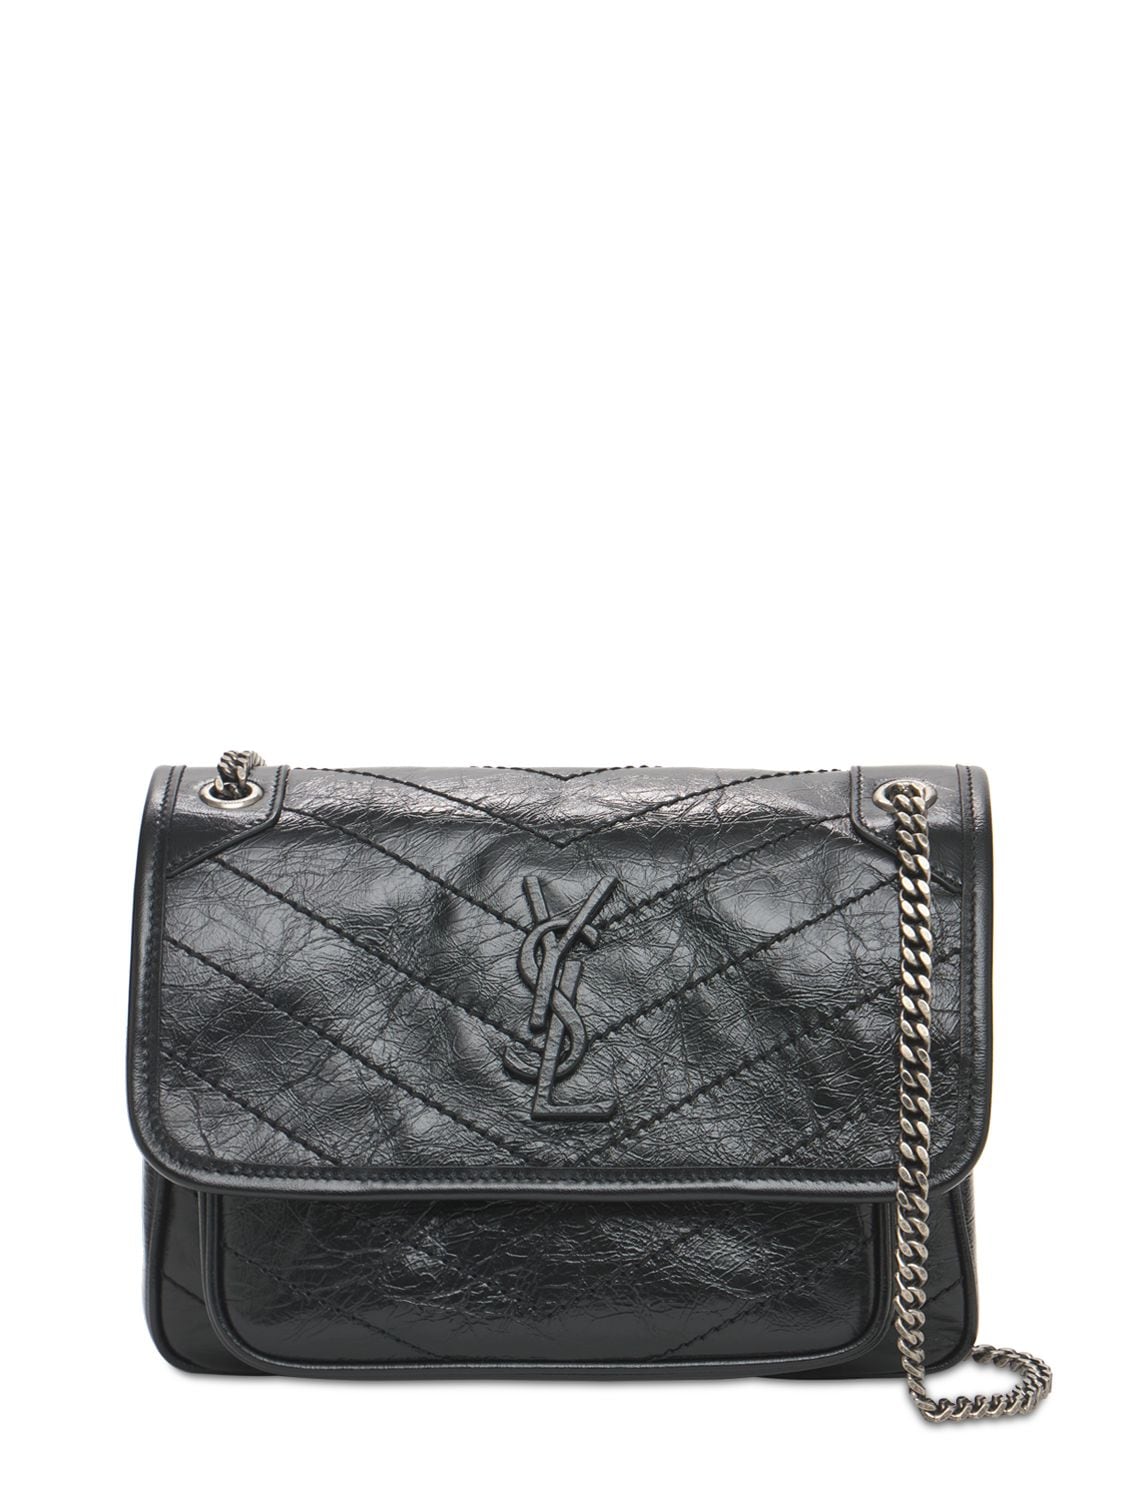 Saint Laurent Niki Monogram Crinkled Leather Bag In Black